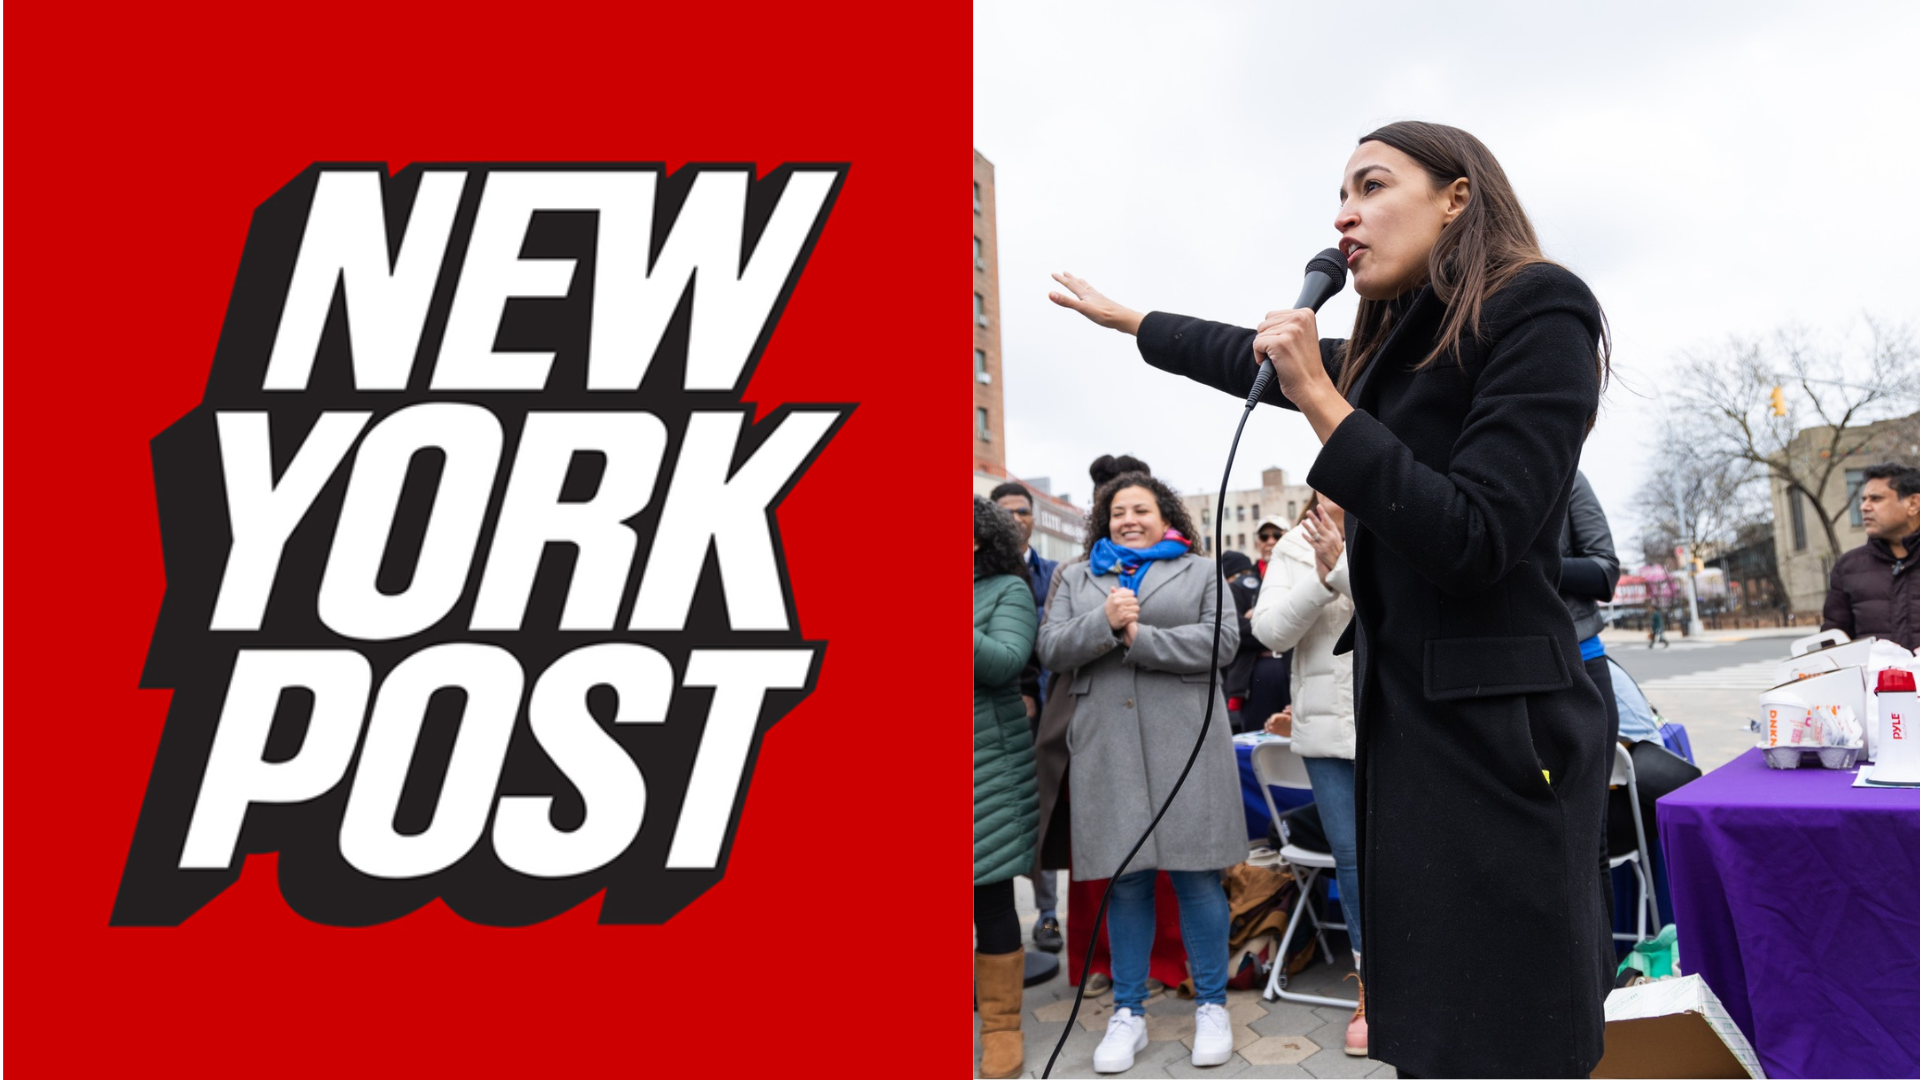 “Hackean” el New York Post y publican amenazas de muerte contra representante Alexandra Ocasio-Cortéz